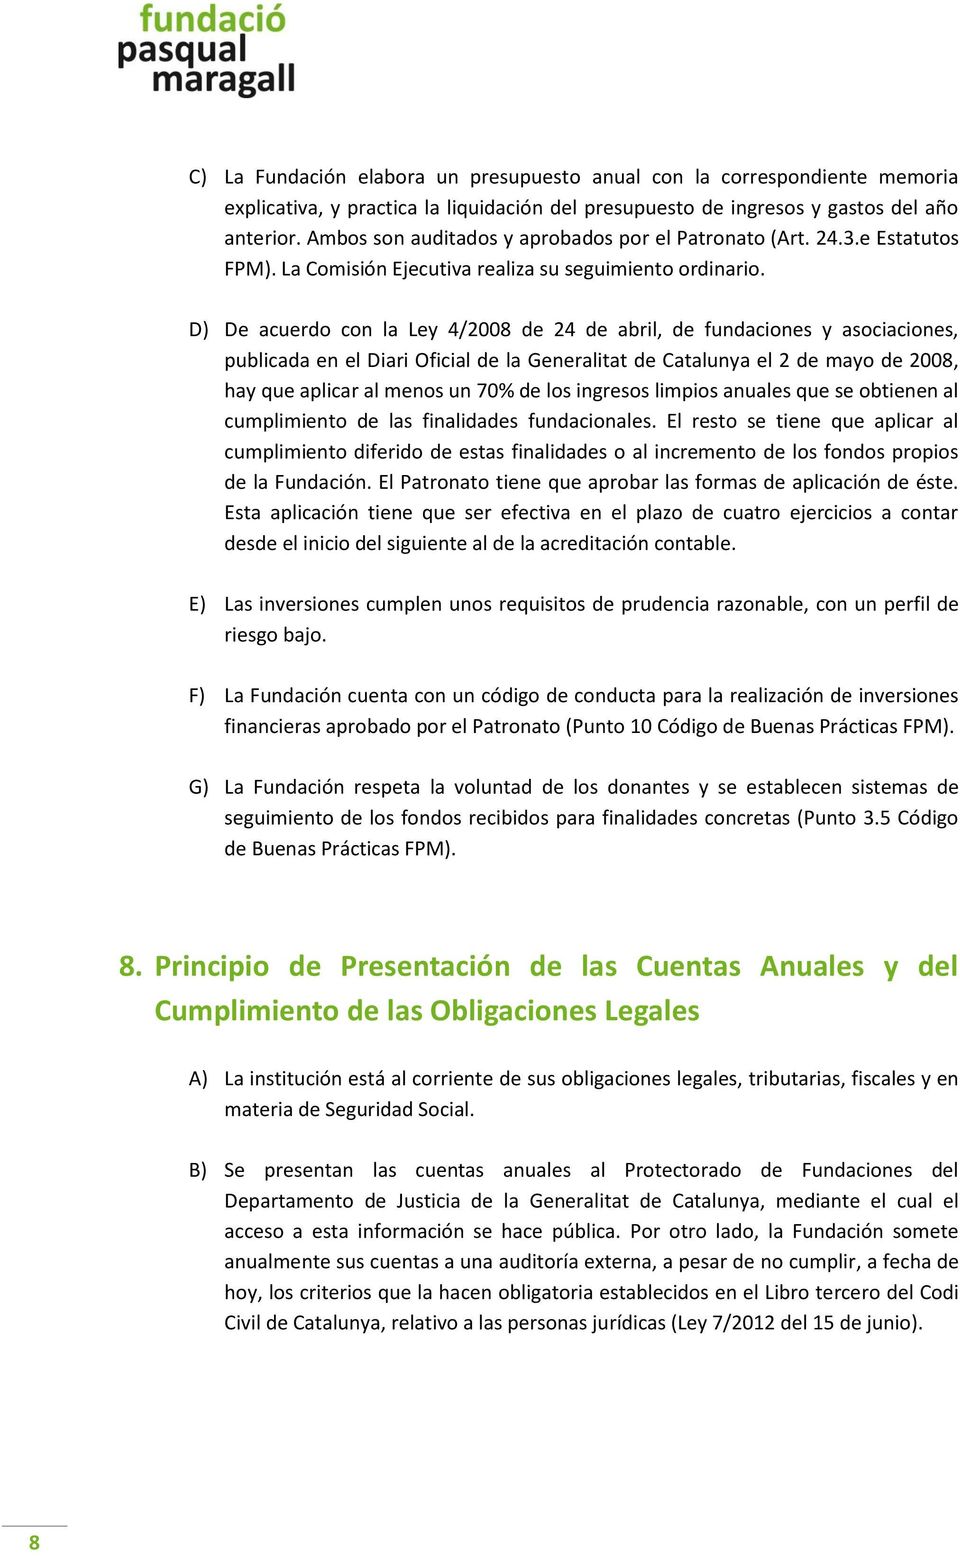 D) De acuerdo con la Ley 4/2008 de 24 de abril, de fundaciones y asociaciones, publicada en el Diari Oficial de la Generalitat de Catalunya el 2 de mayo de 2008, hay que aplicar al menos un 70% de